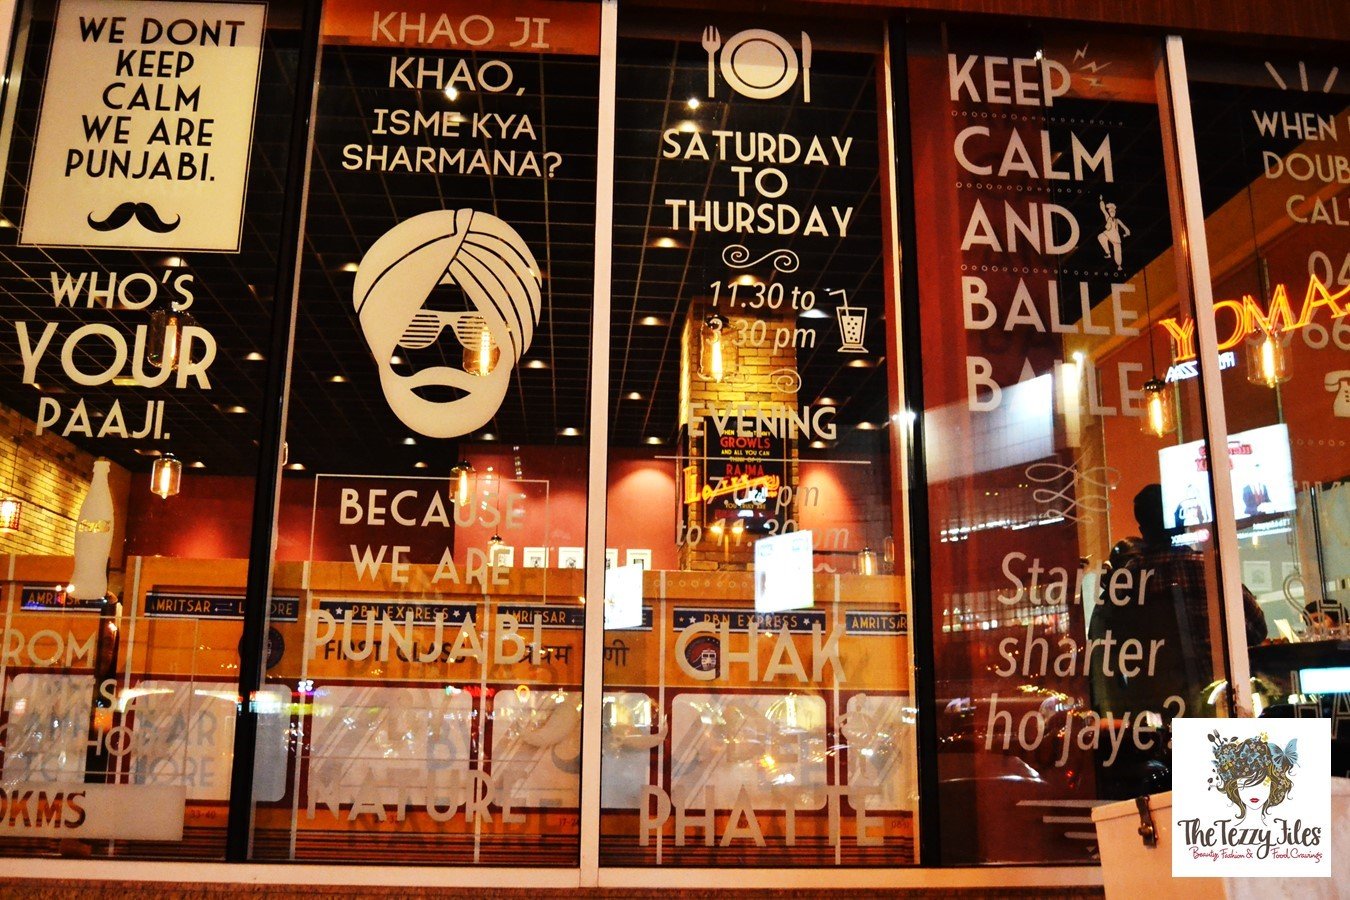 مطعم بنجابي باي نيتشر من ارقى مطاعم هندية في دبي